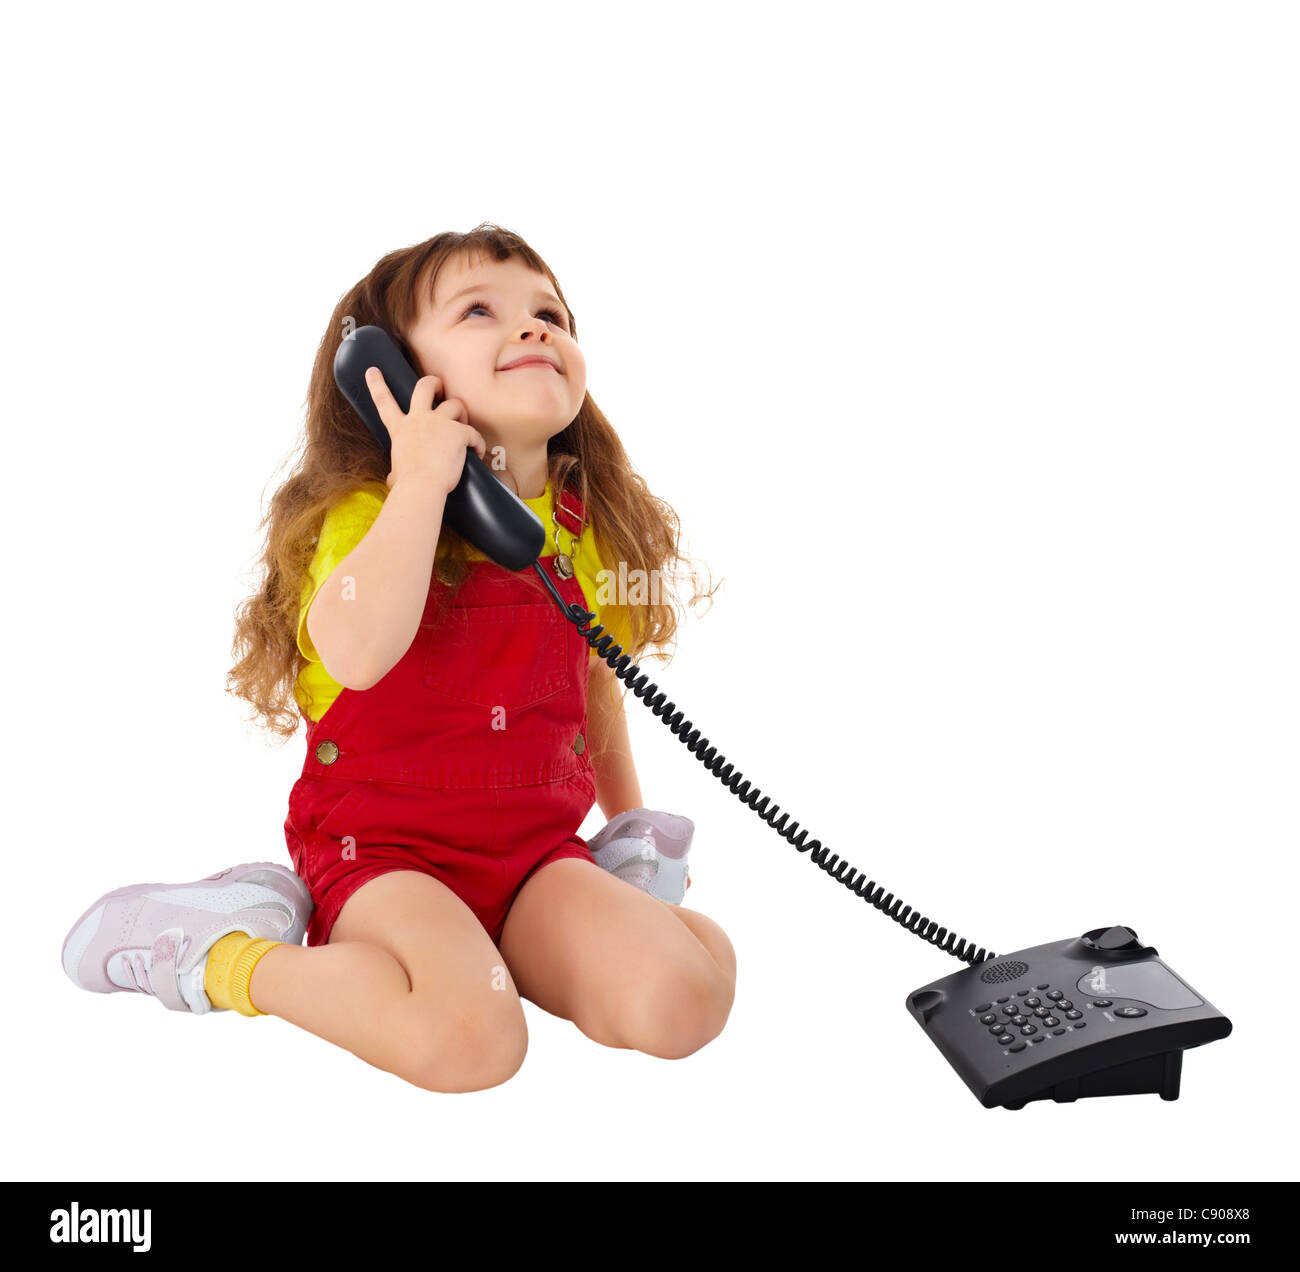 Звонок папу и маму. Ребенок с телефонной трубкой. Девочка разговаривает по телефону. Девочка с телефоном. Маленькая девочка с телефоном.